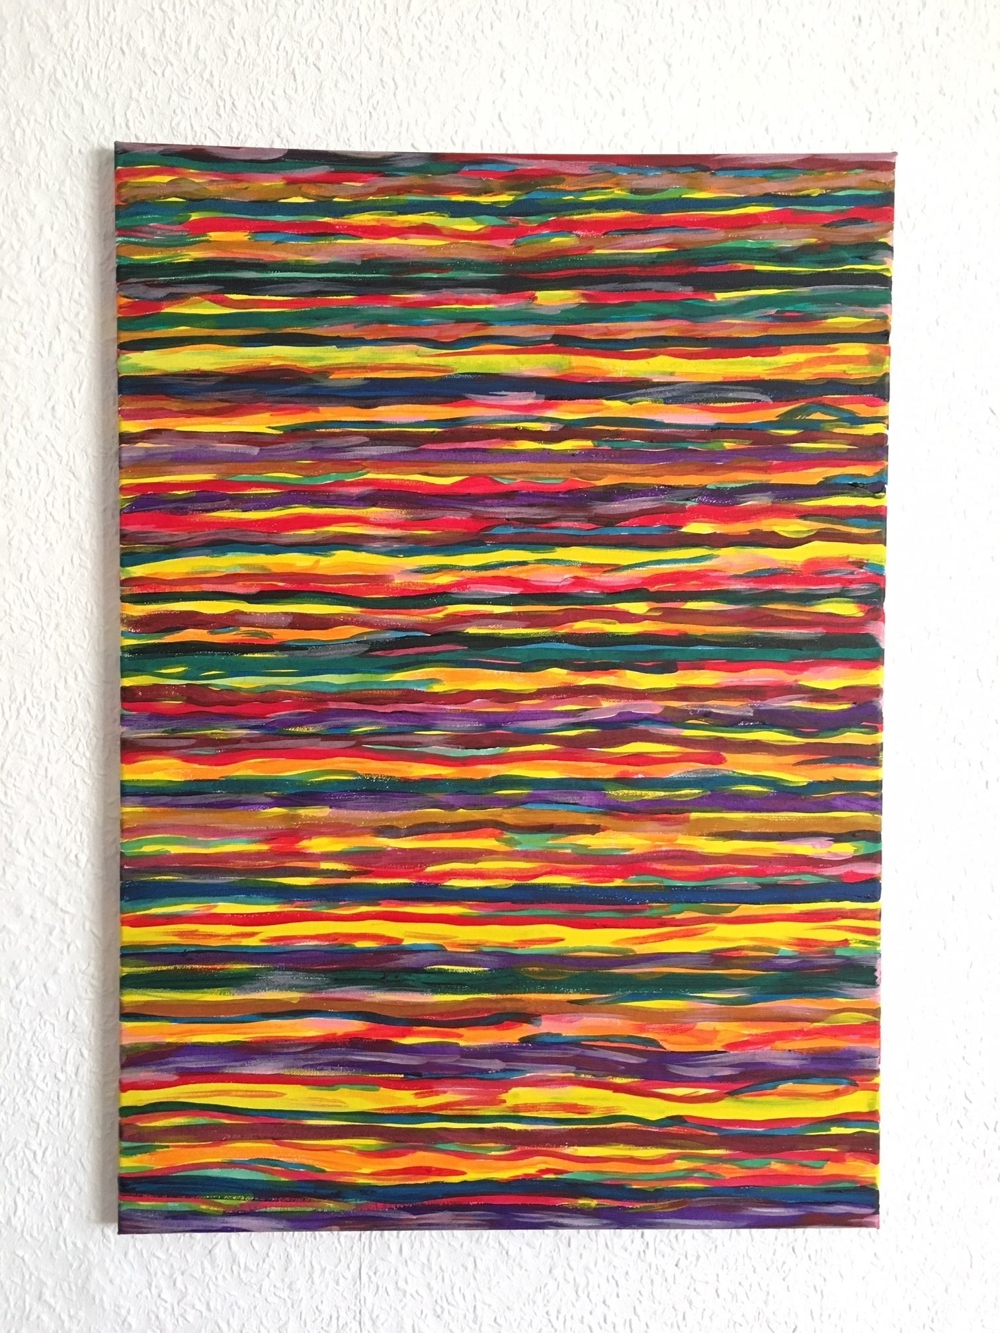 Abstrakte Kunst - Acrylbild in Rottönen 50cm x 70cm